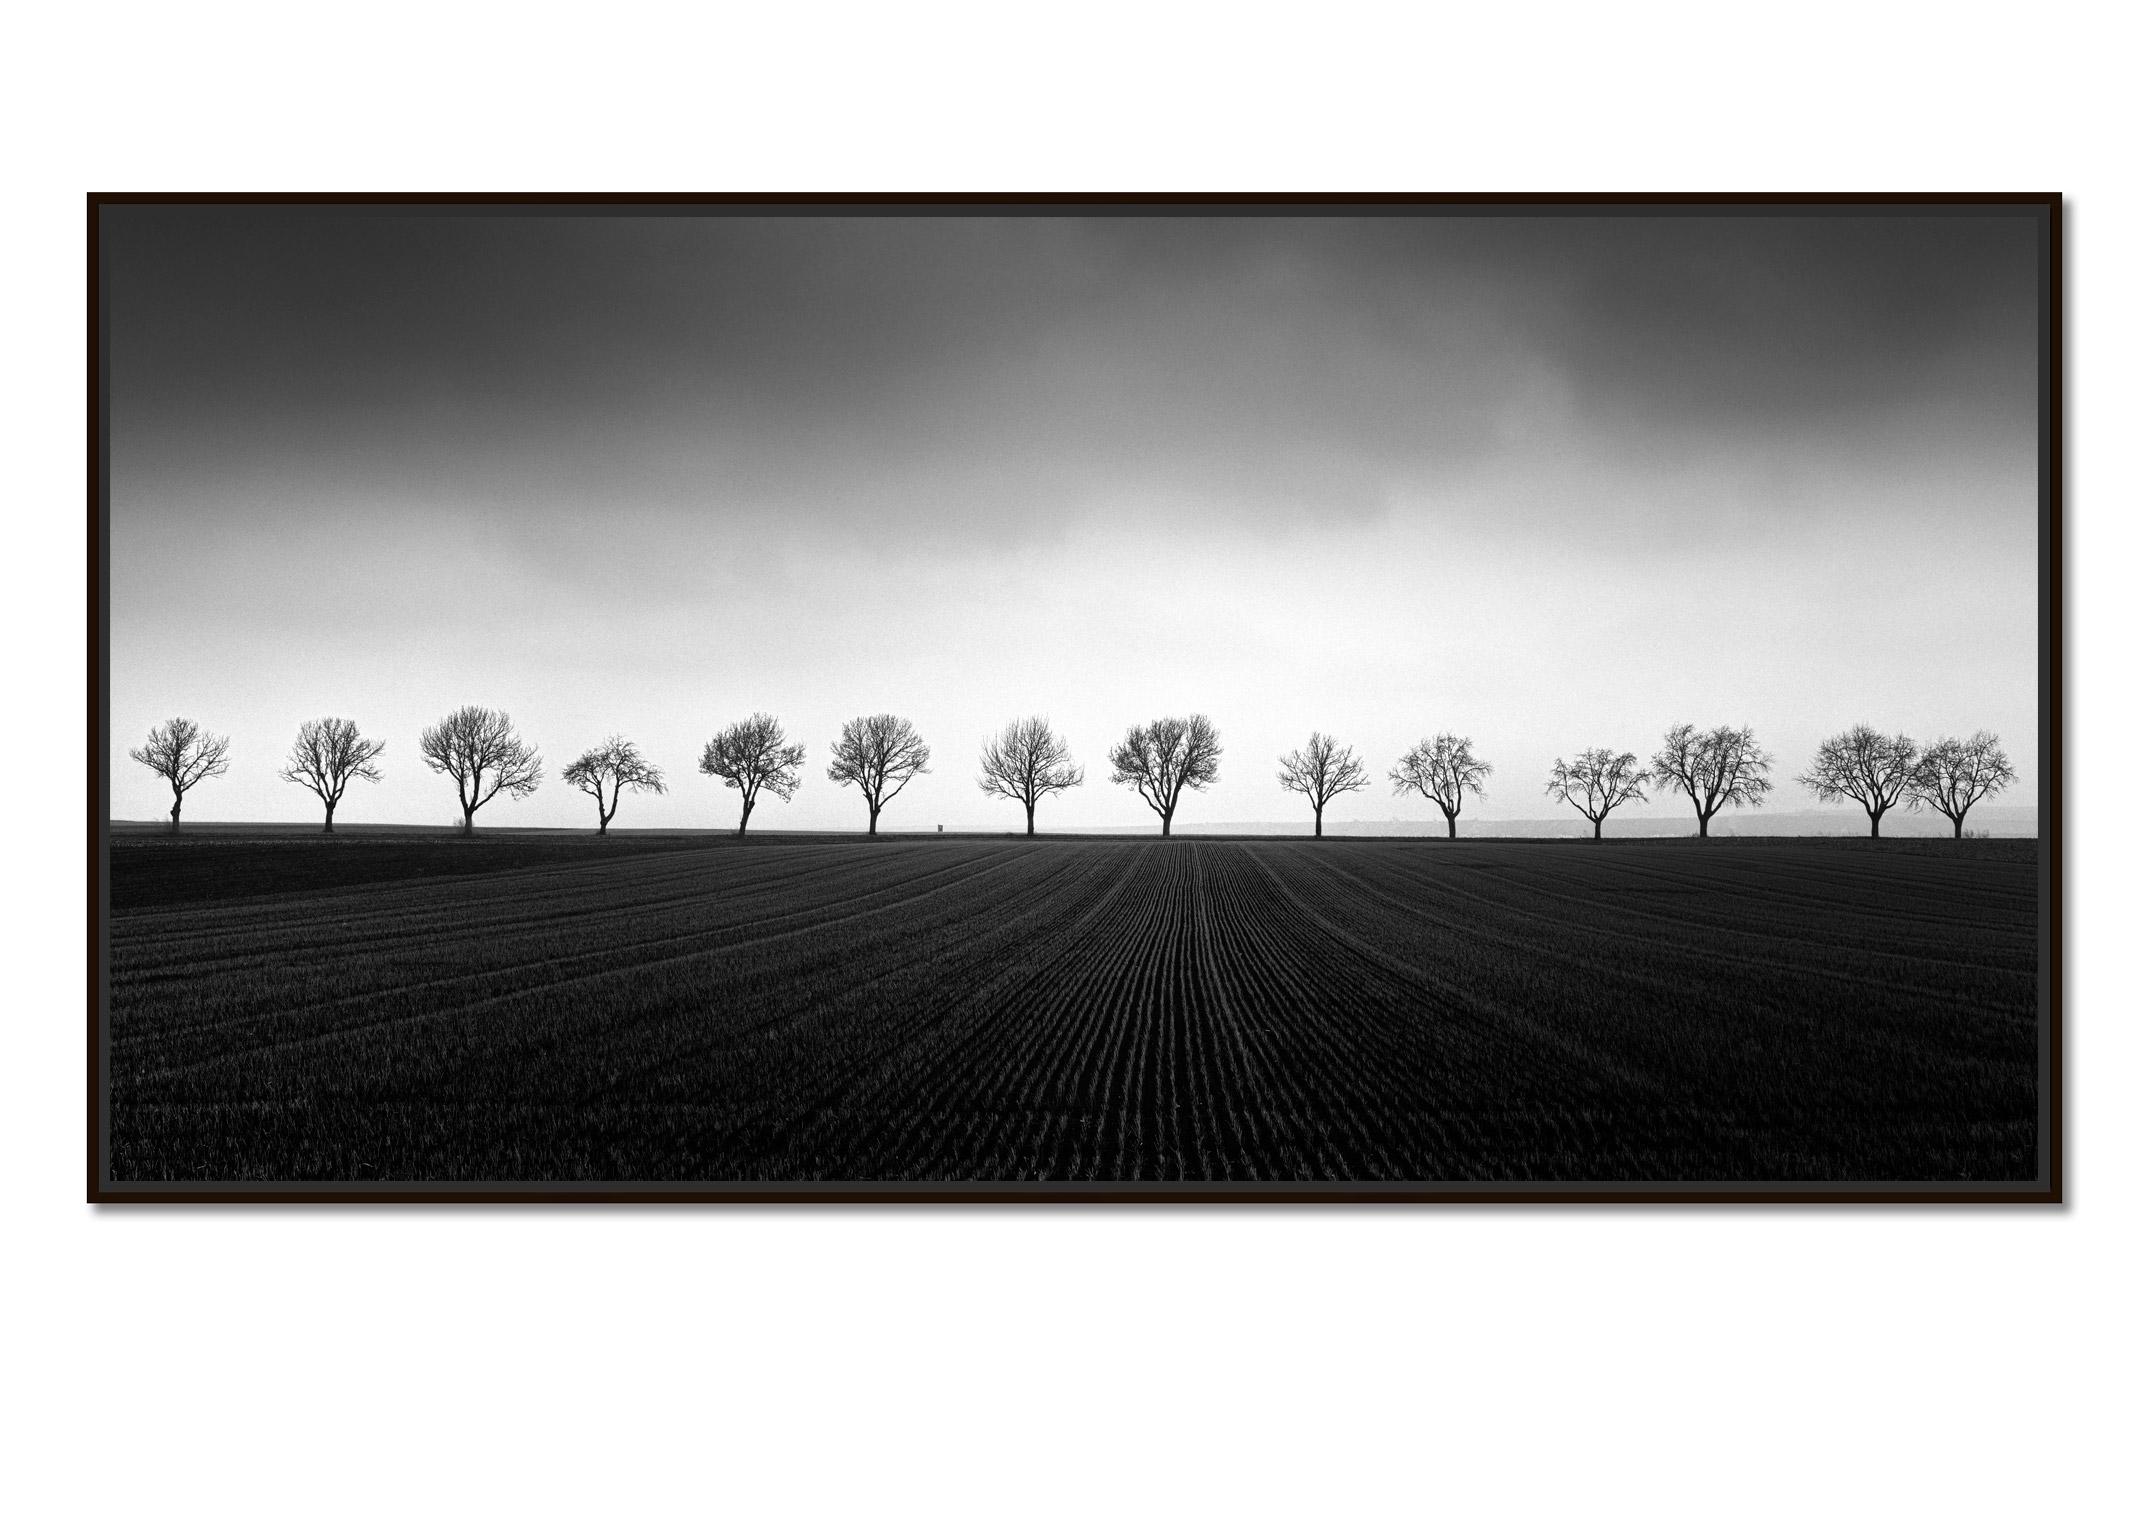 Quatorze cerisiers, champ de maïs, photographie noir et blanc, art, paysage - Photograph de Gerald Berghammer